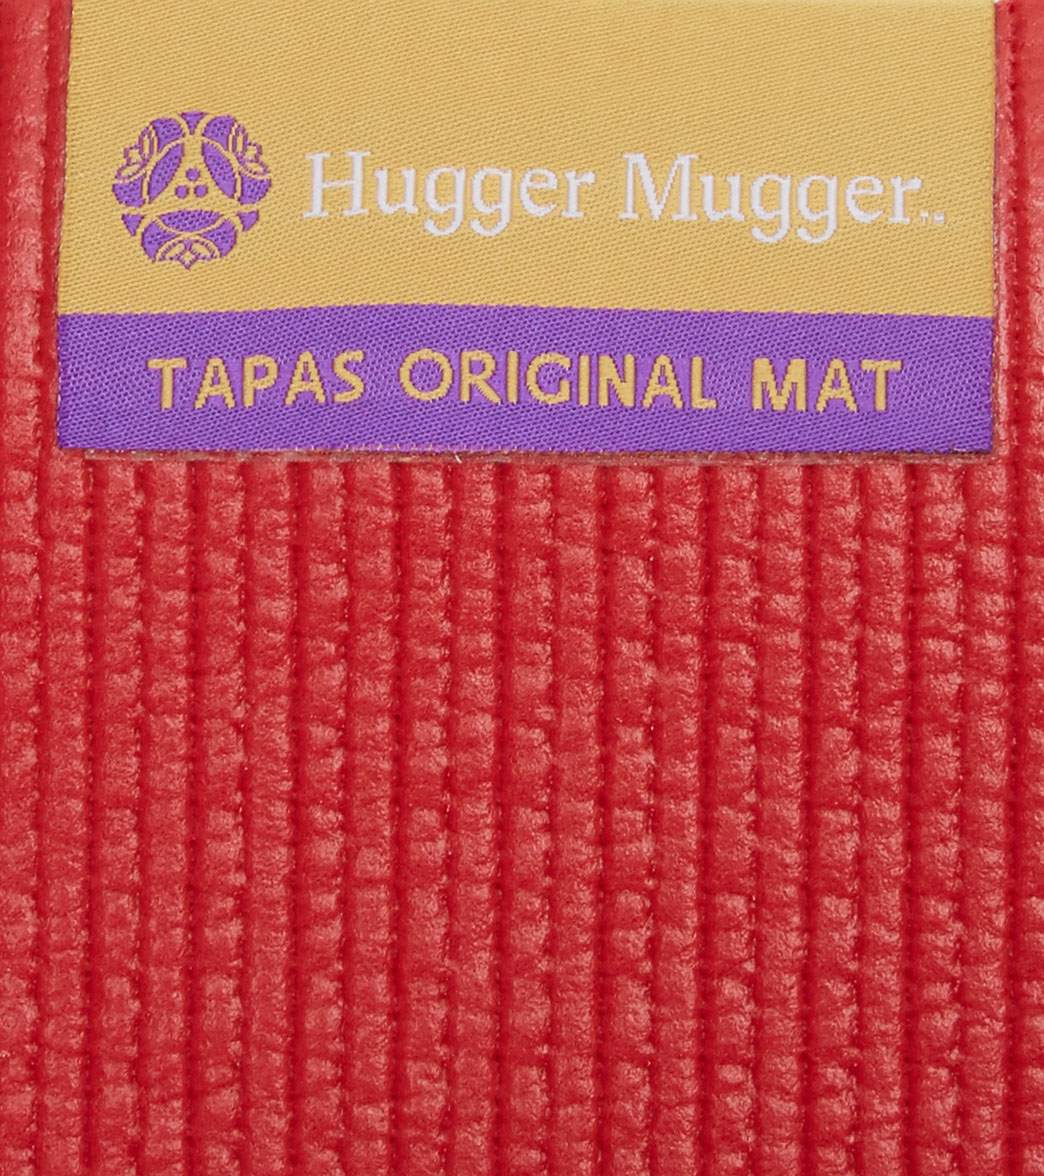 hugger mugger tapas